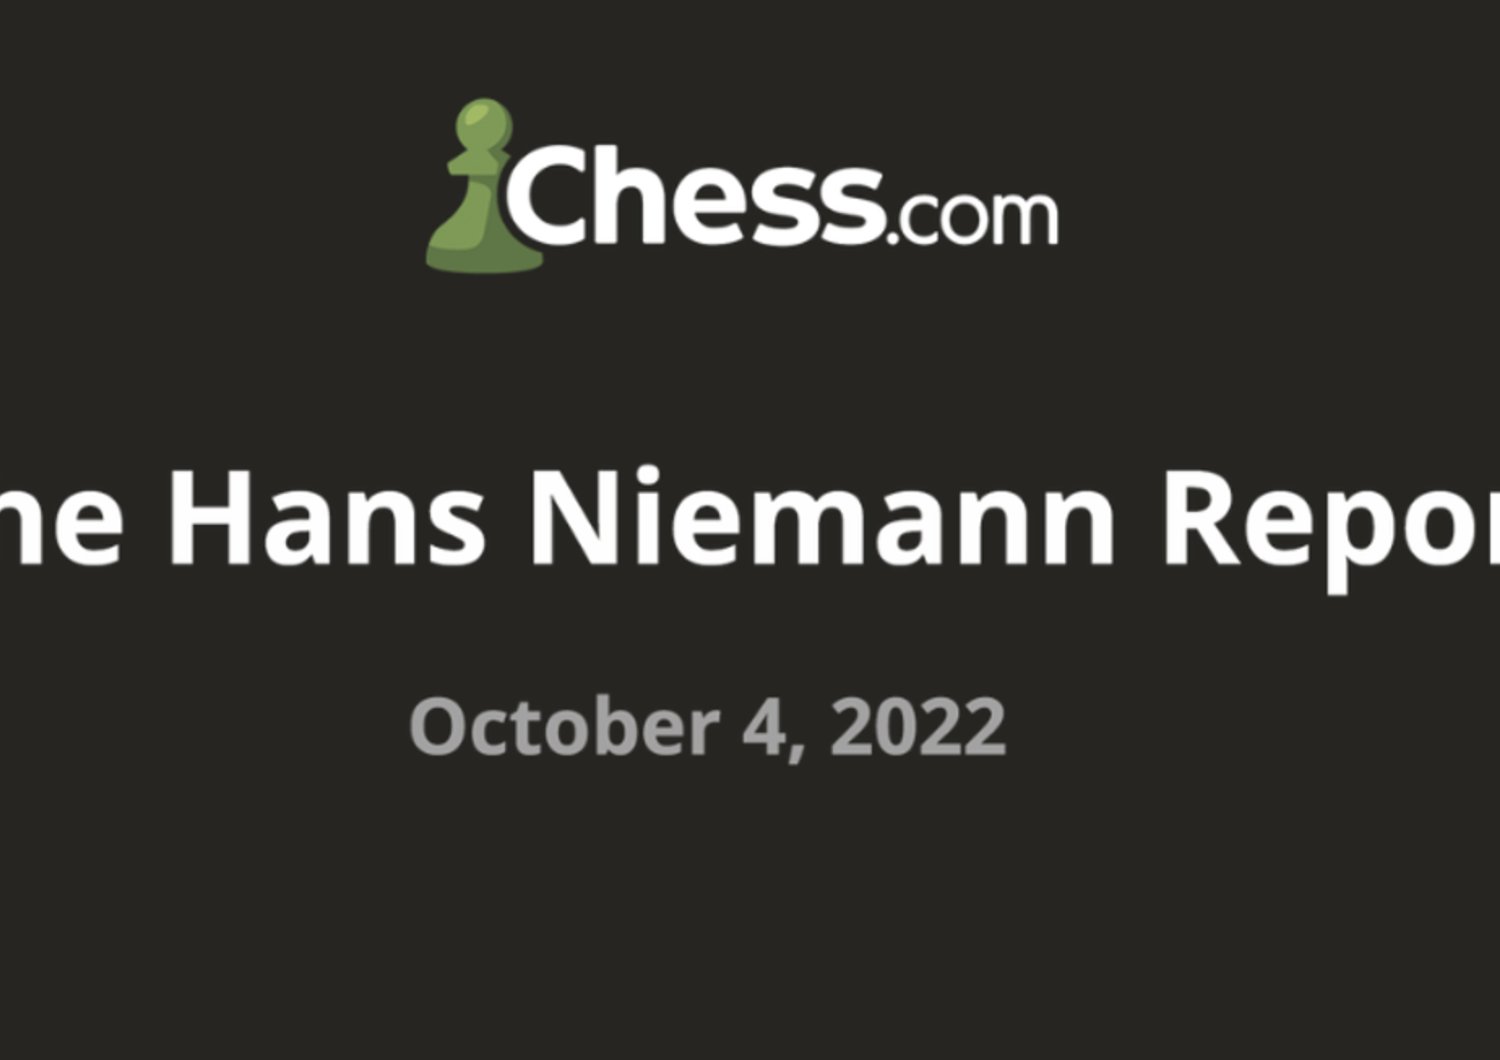 scacchi chesscom accusa niemann ha barato 100 volte